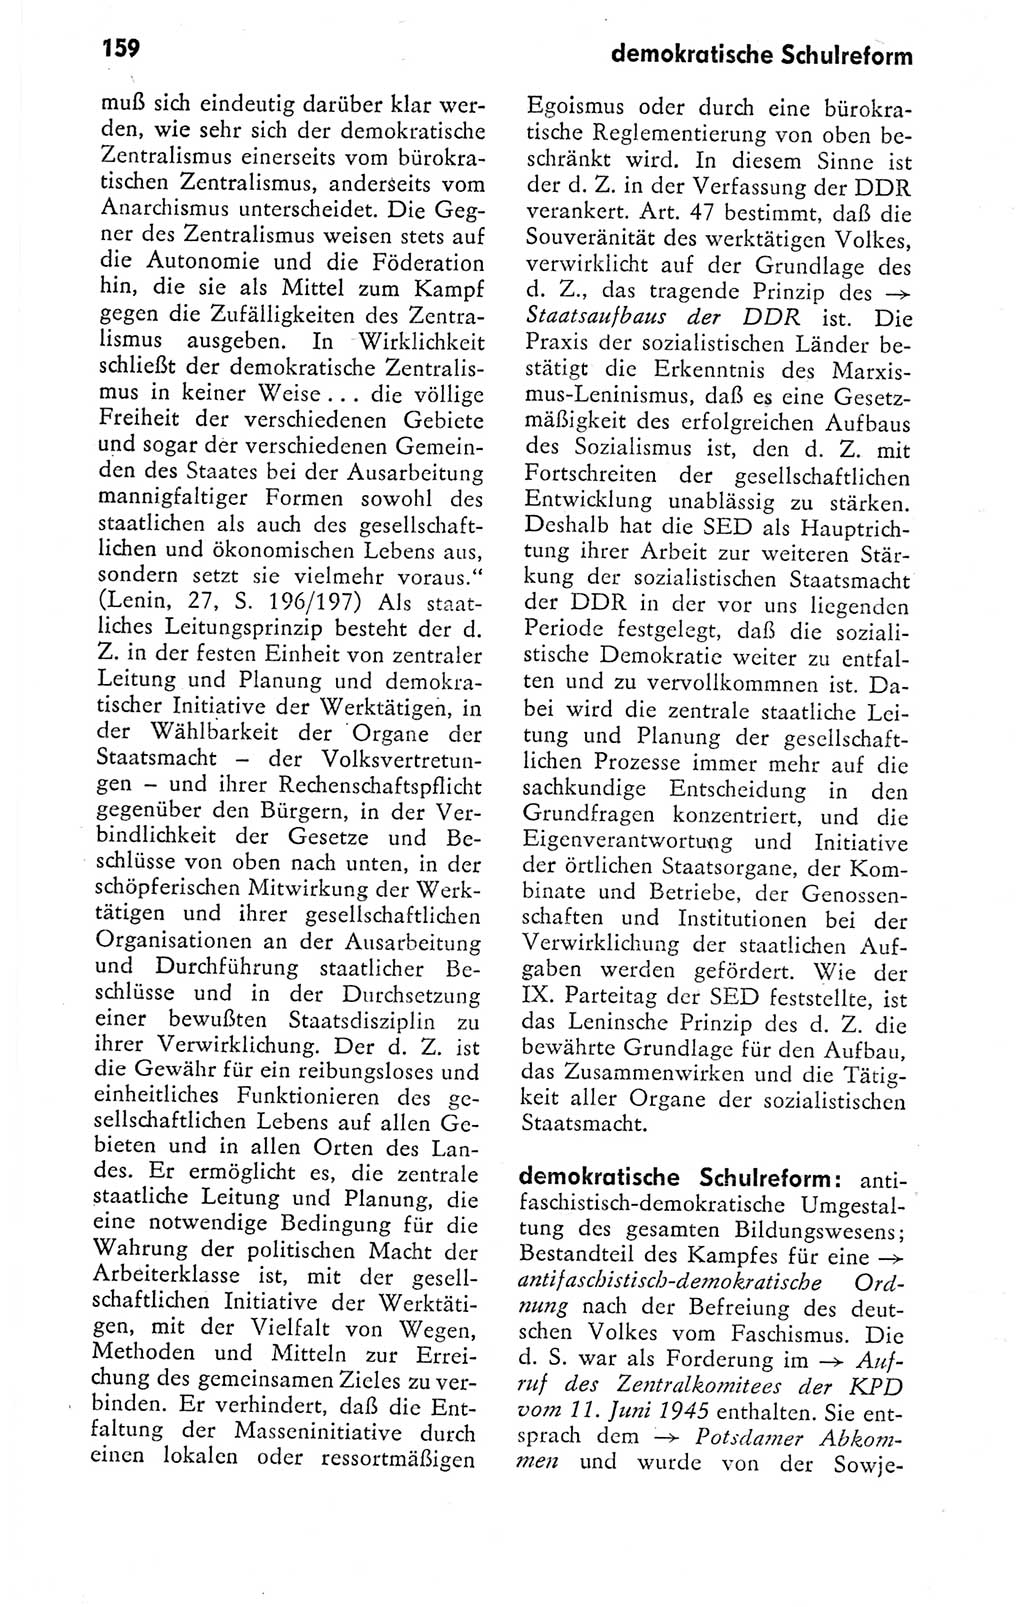 Kleines politisches Wörterbuch [Deutsche Demokratische Republik (DDR)] 1978, Seite 159 (Kl. pol. Wb. DDR 1978, S. 159)